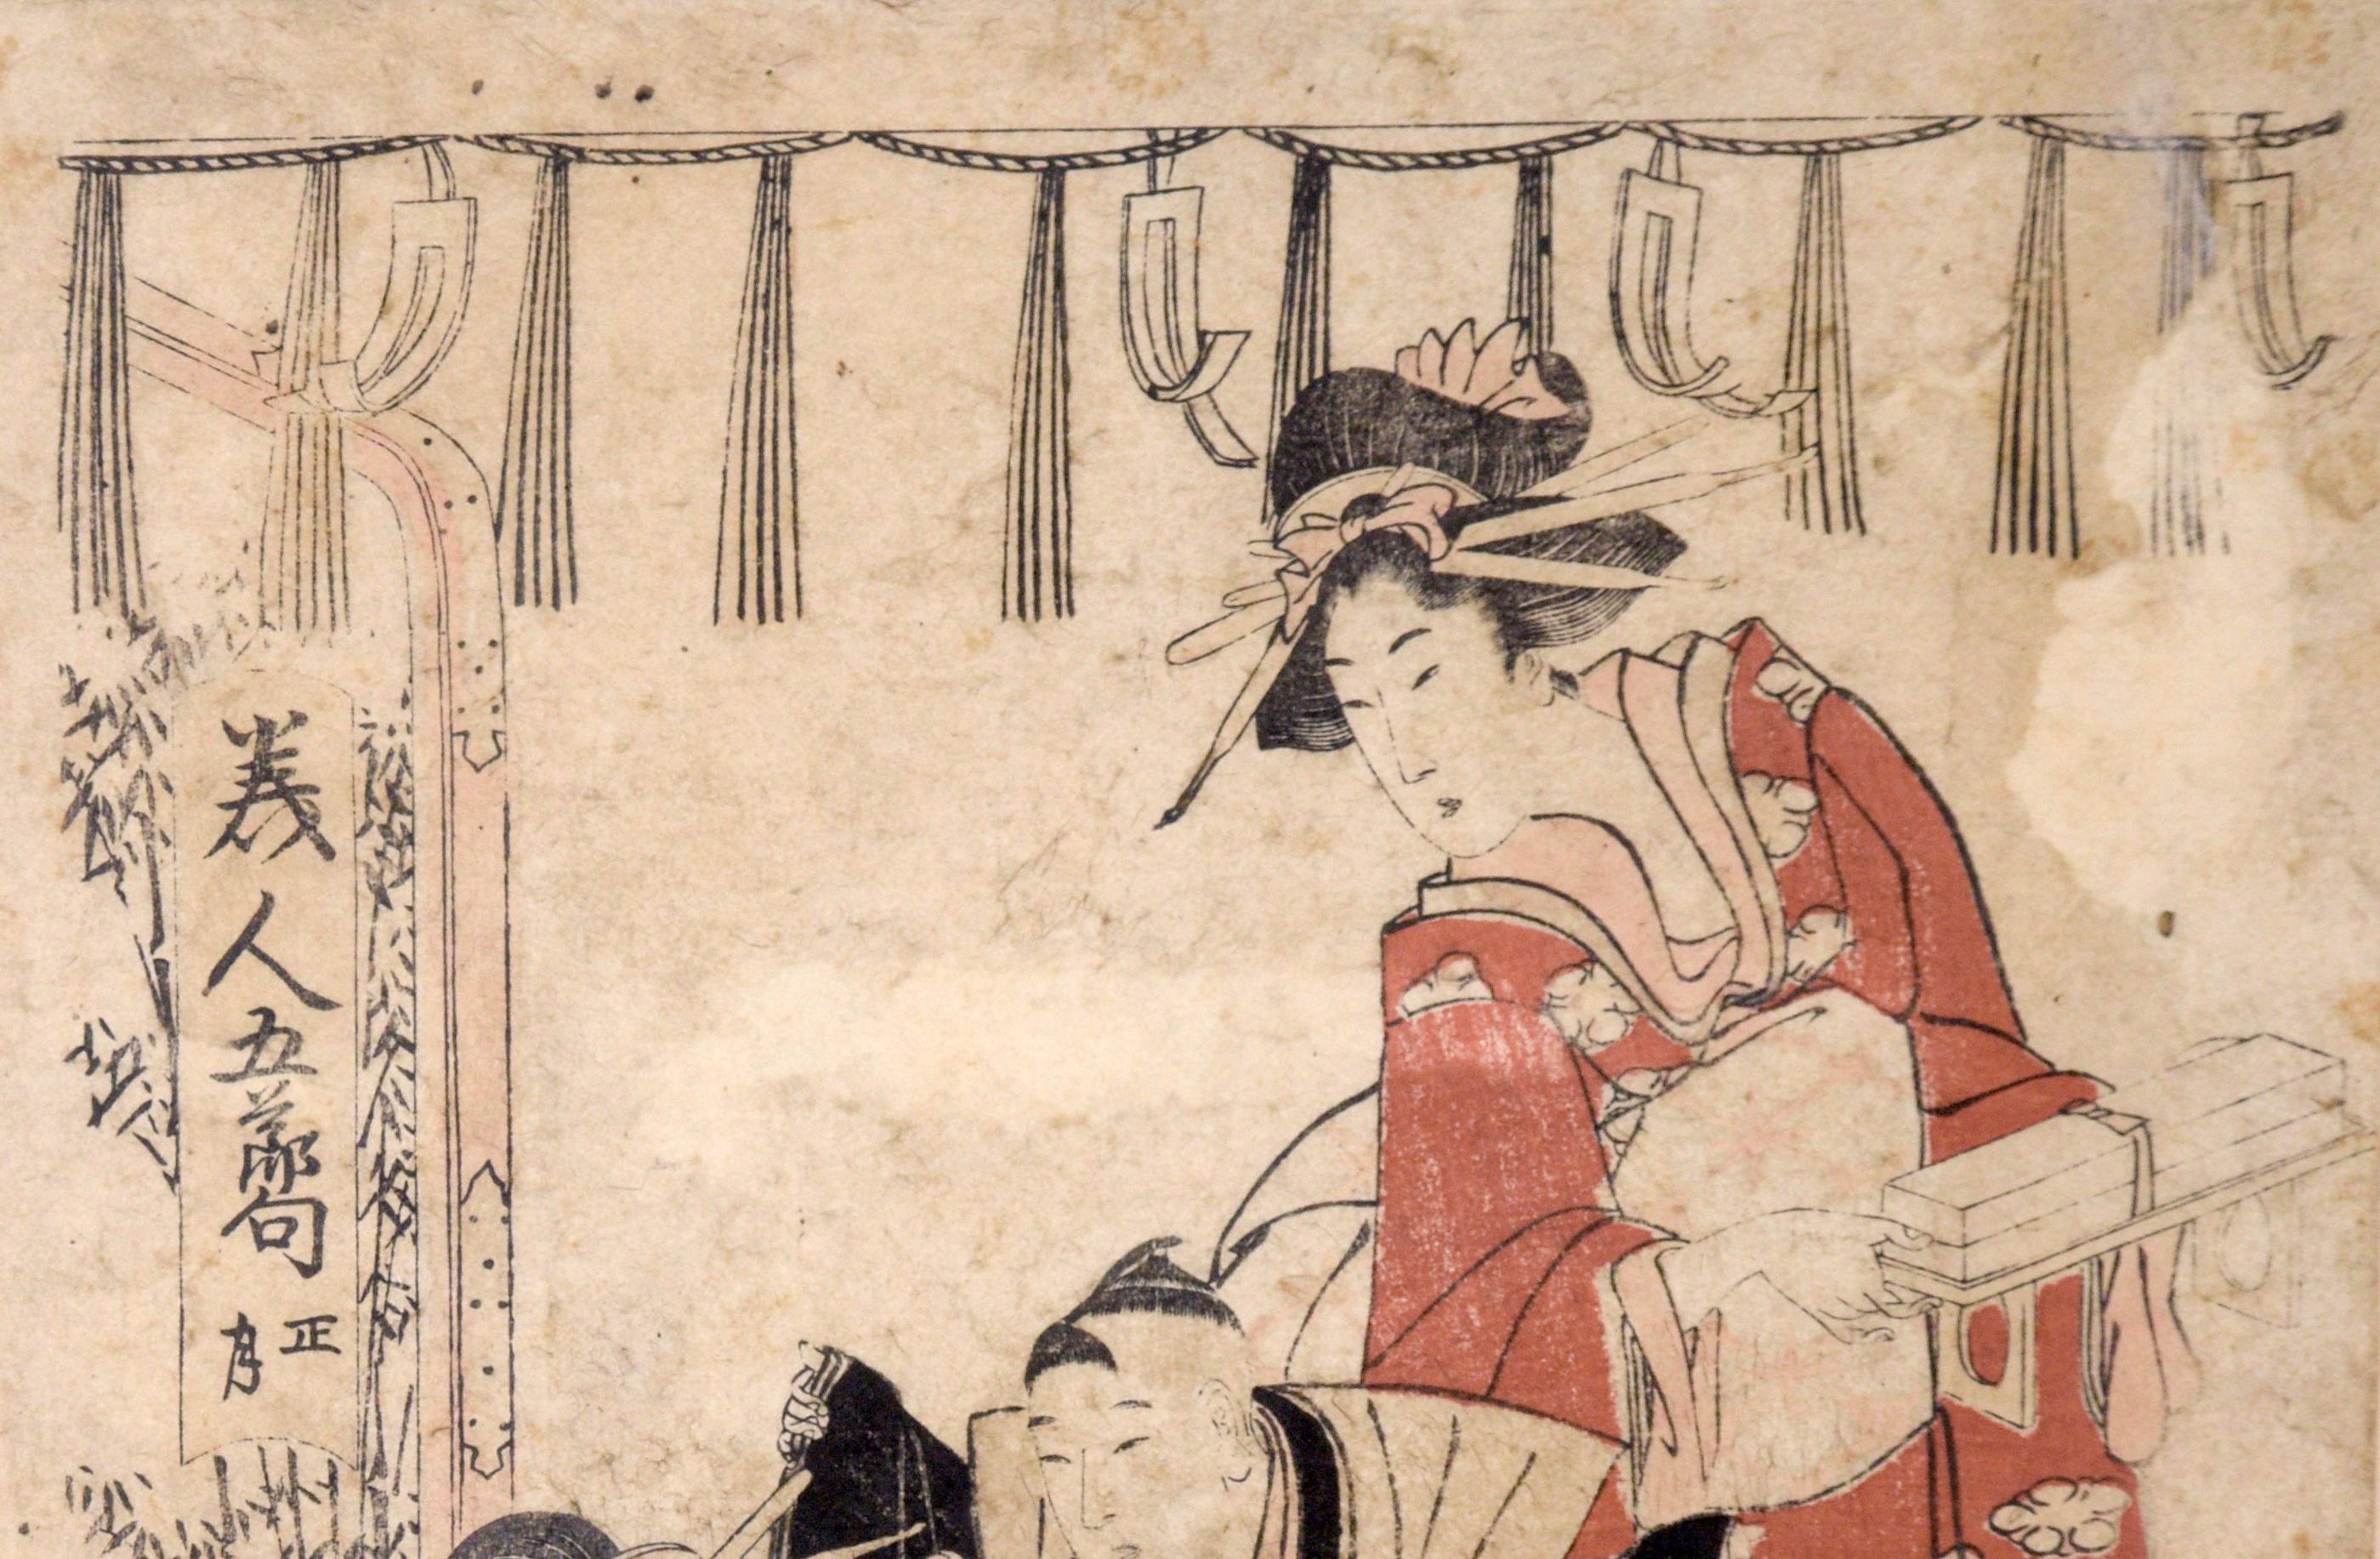 Dressing the Boy Samurai - Kuniyoshi Japanischer Holzschnitt mit Original-Holzschnitt
Ein Samurai-Junge kleidet sich mit Hilfe seiner jüngeren Schwester an, während seine Mutter zuschaut von Utagawa Kumiyoshi (Japan, 1797 - 1861 ).
Präsentiert in